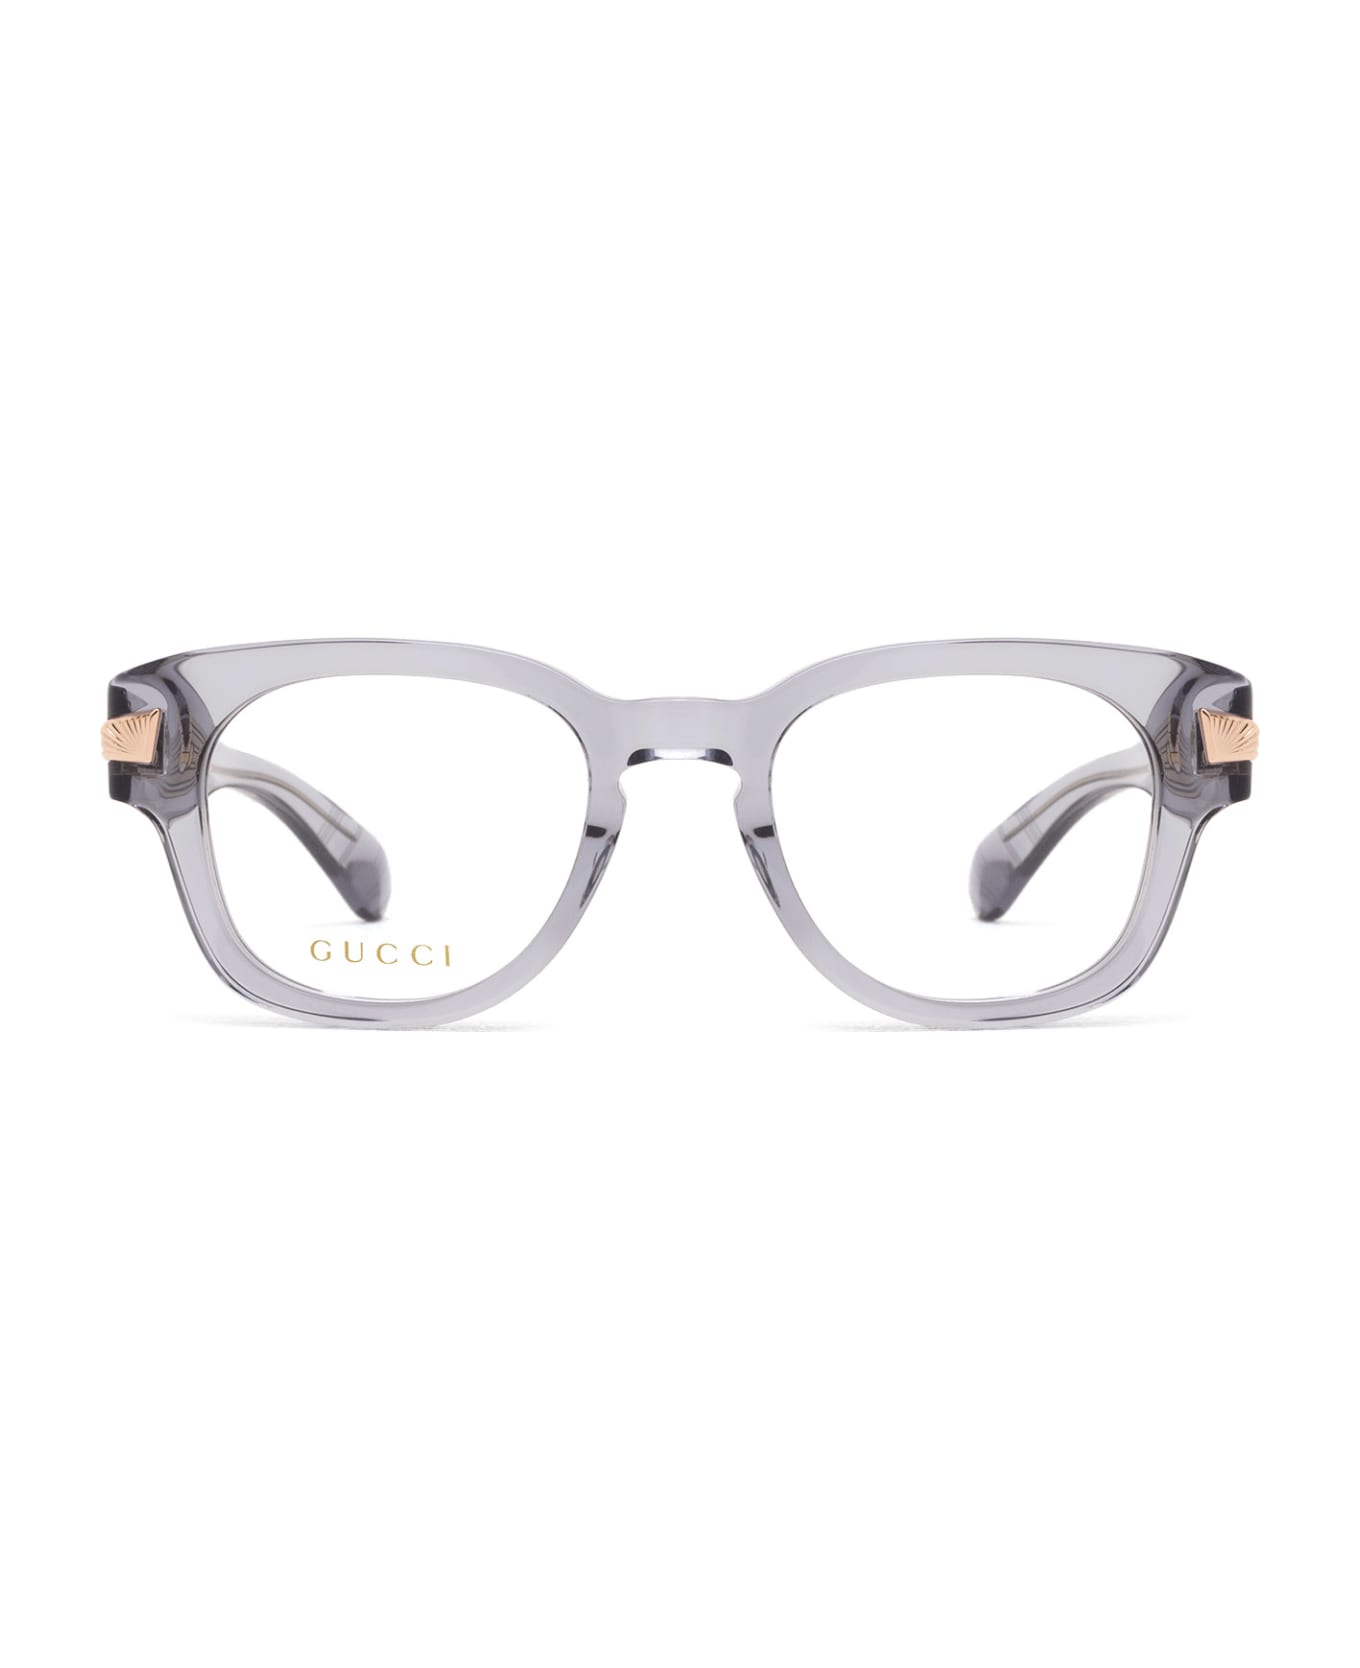 Gucci Eyewear Gg1518o Grey Glasses - Grey アイウェア